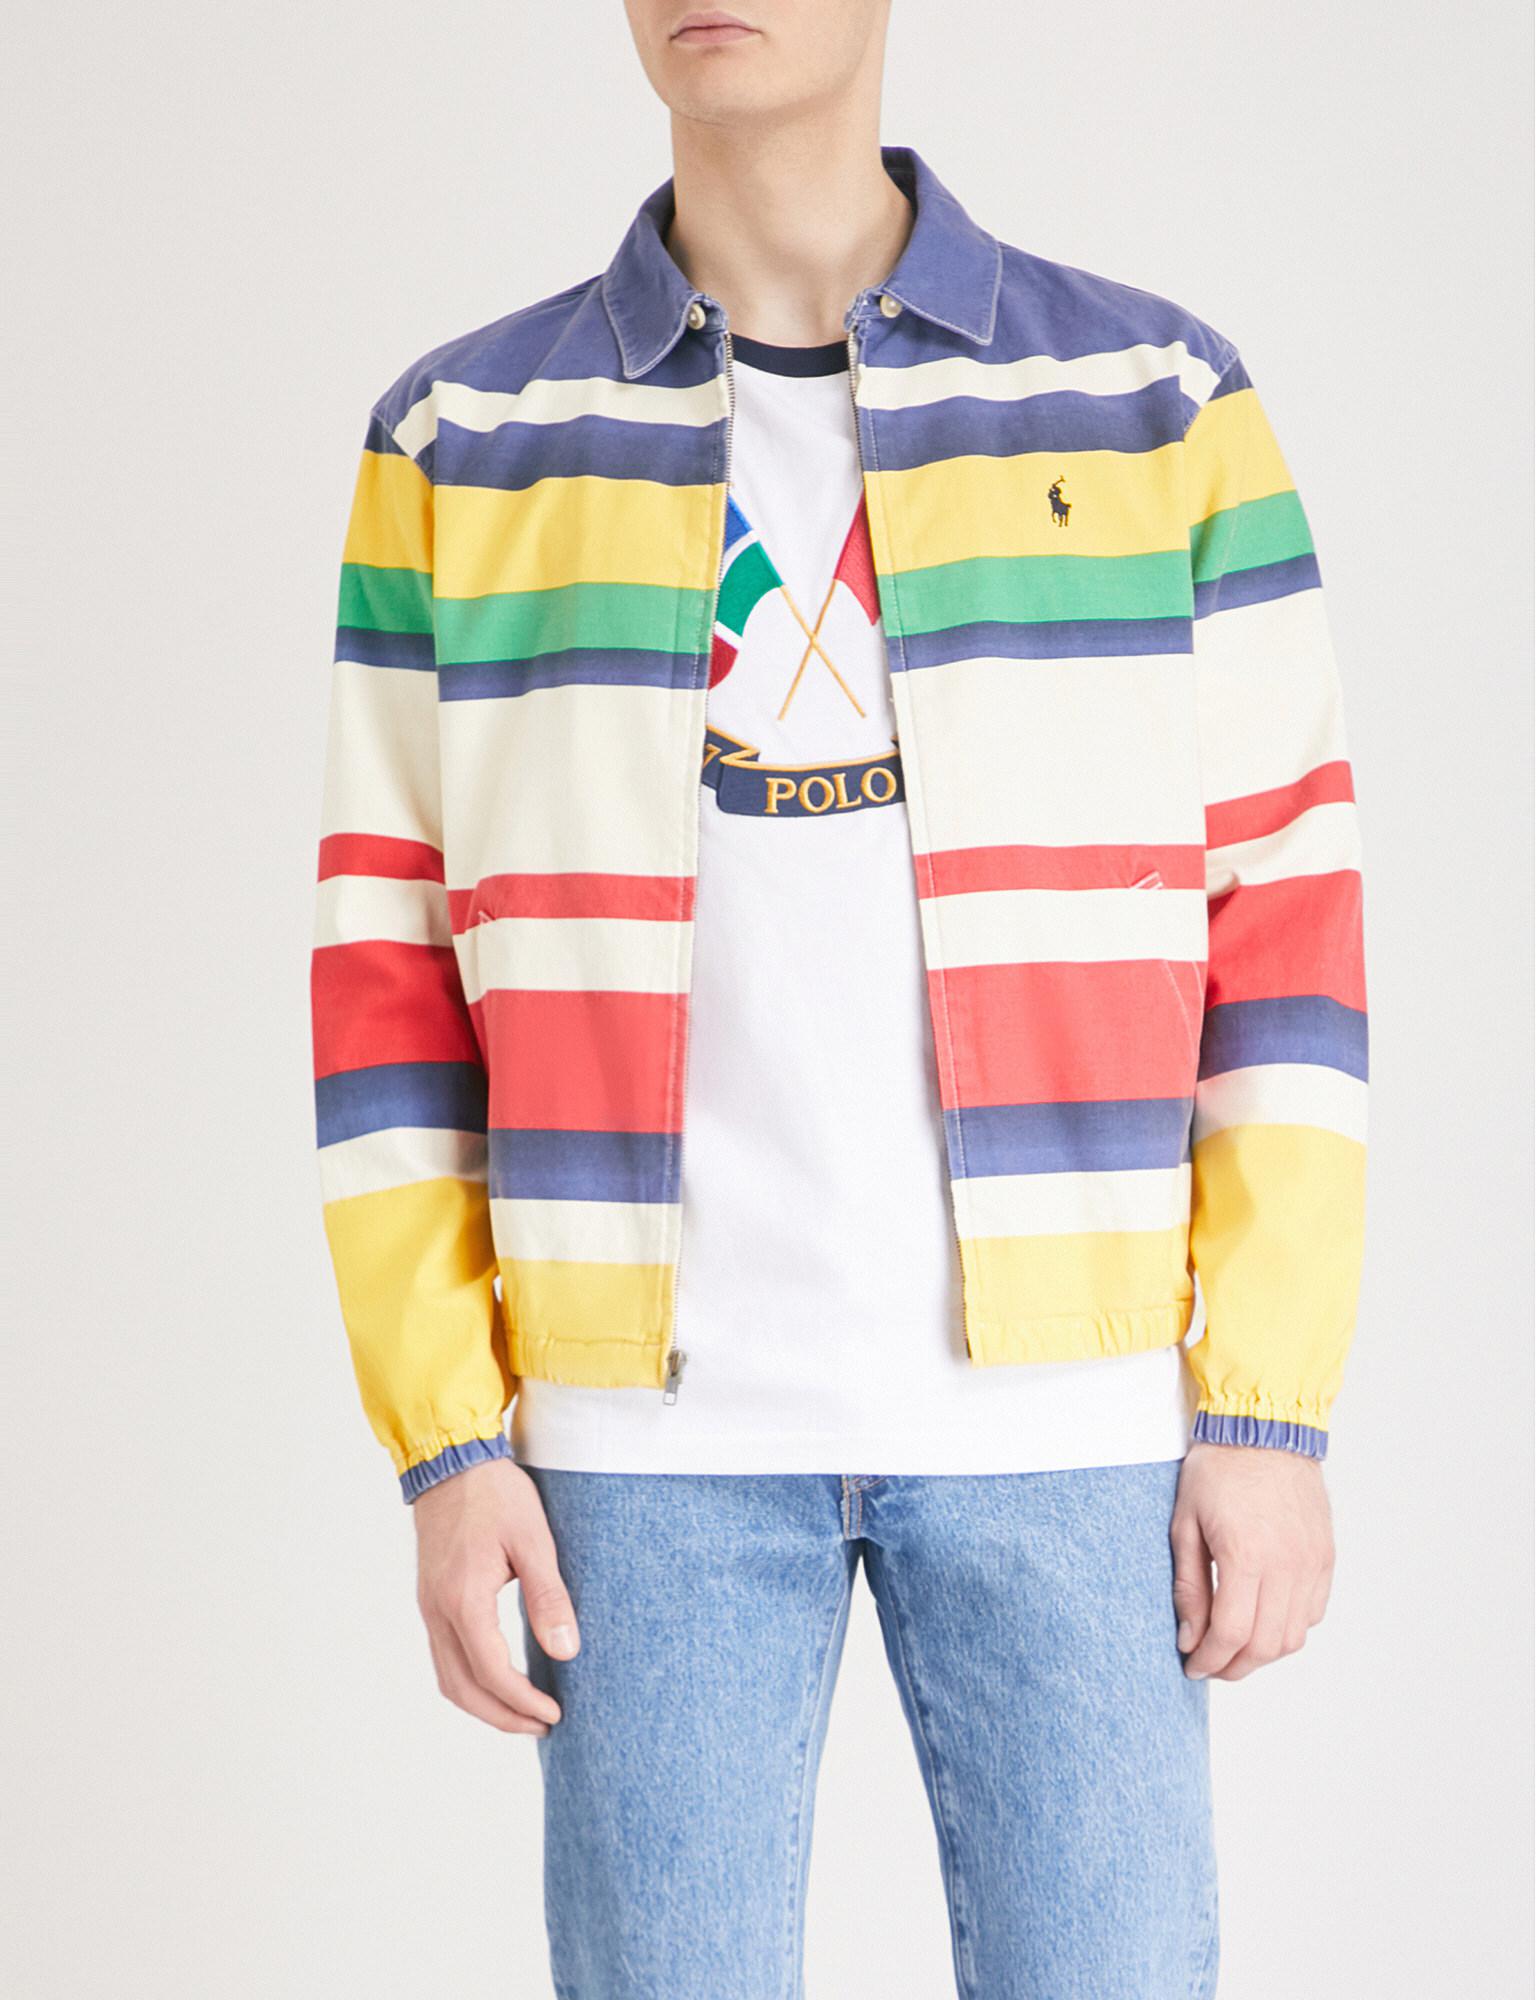 Polo Ralph Lauren Bayport Striped Cotton-piqué Jacket for Men - Lyst